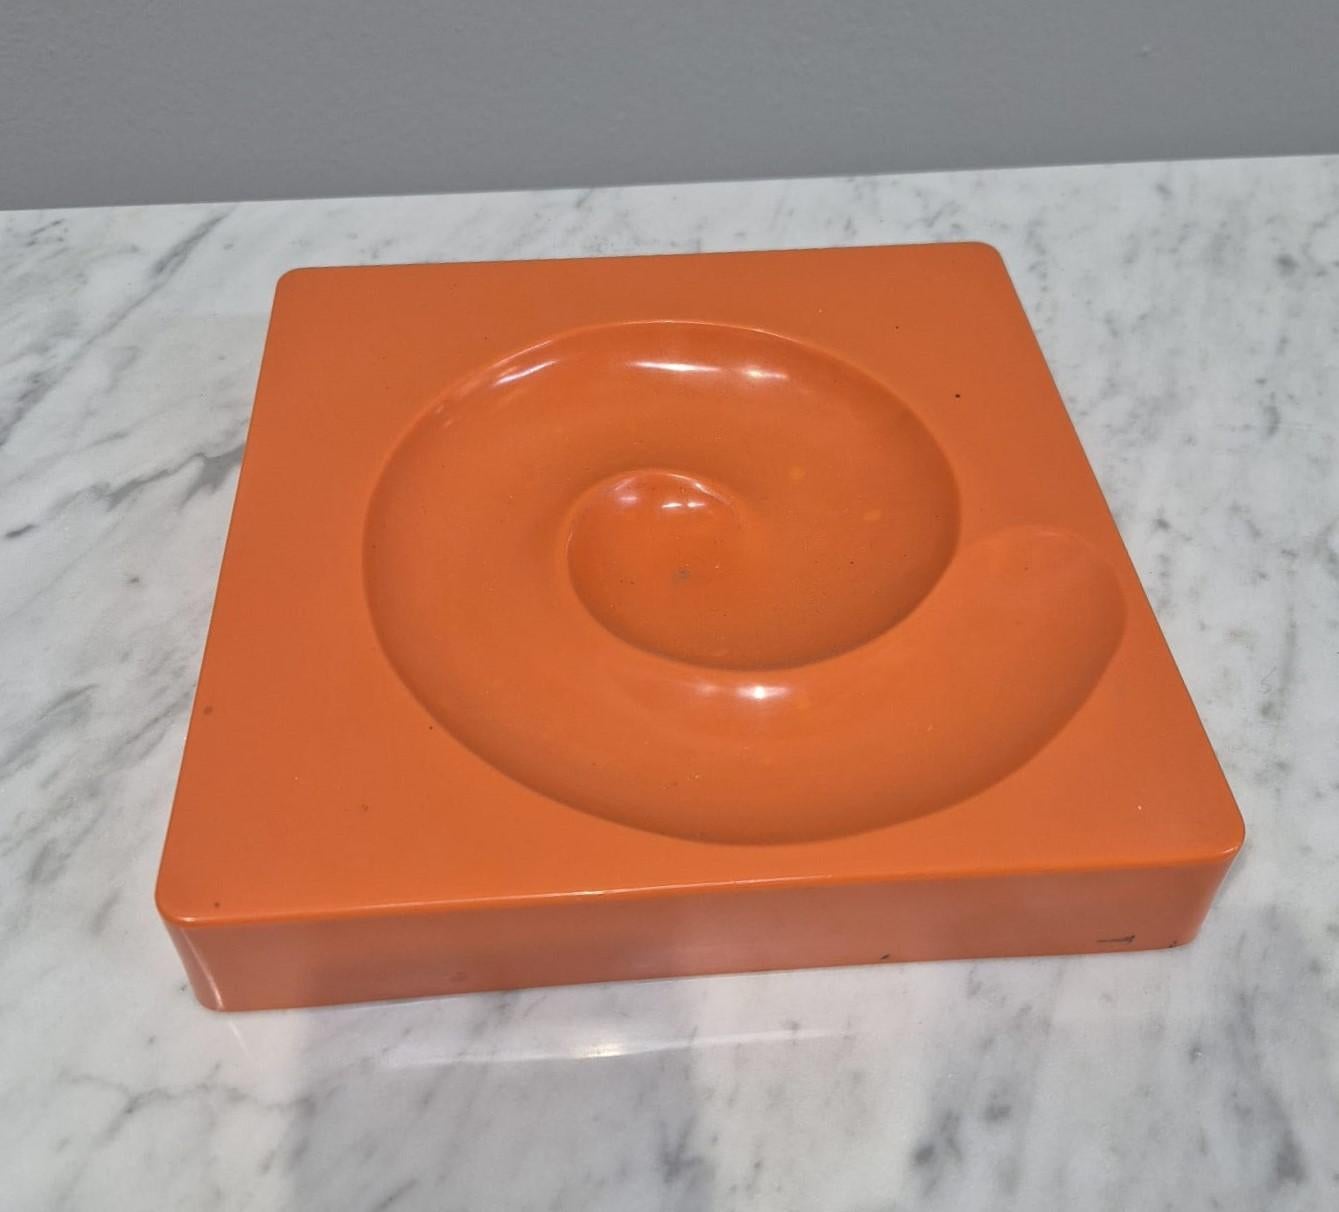 Peduzzi Riva orange Spiros Aschenbecher für Artemide, 1960er Jahre (Mid-20th Century)